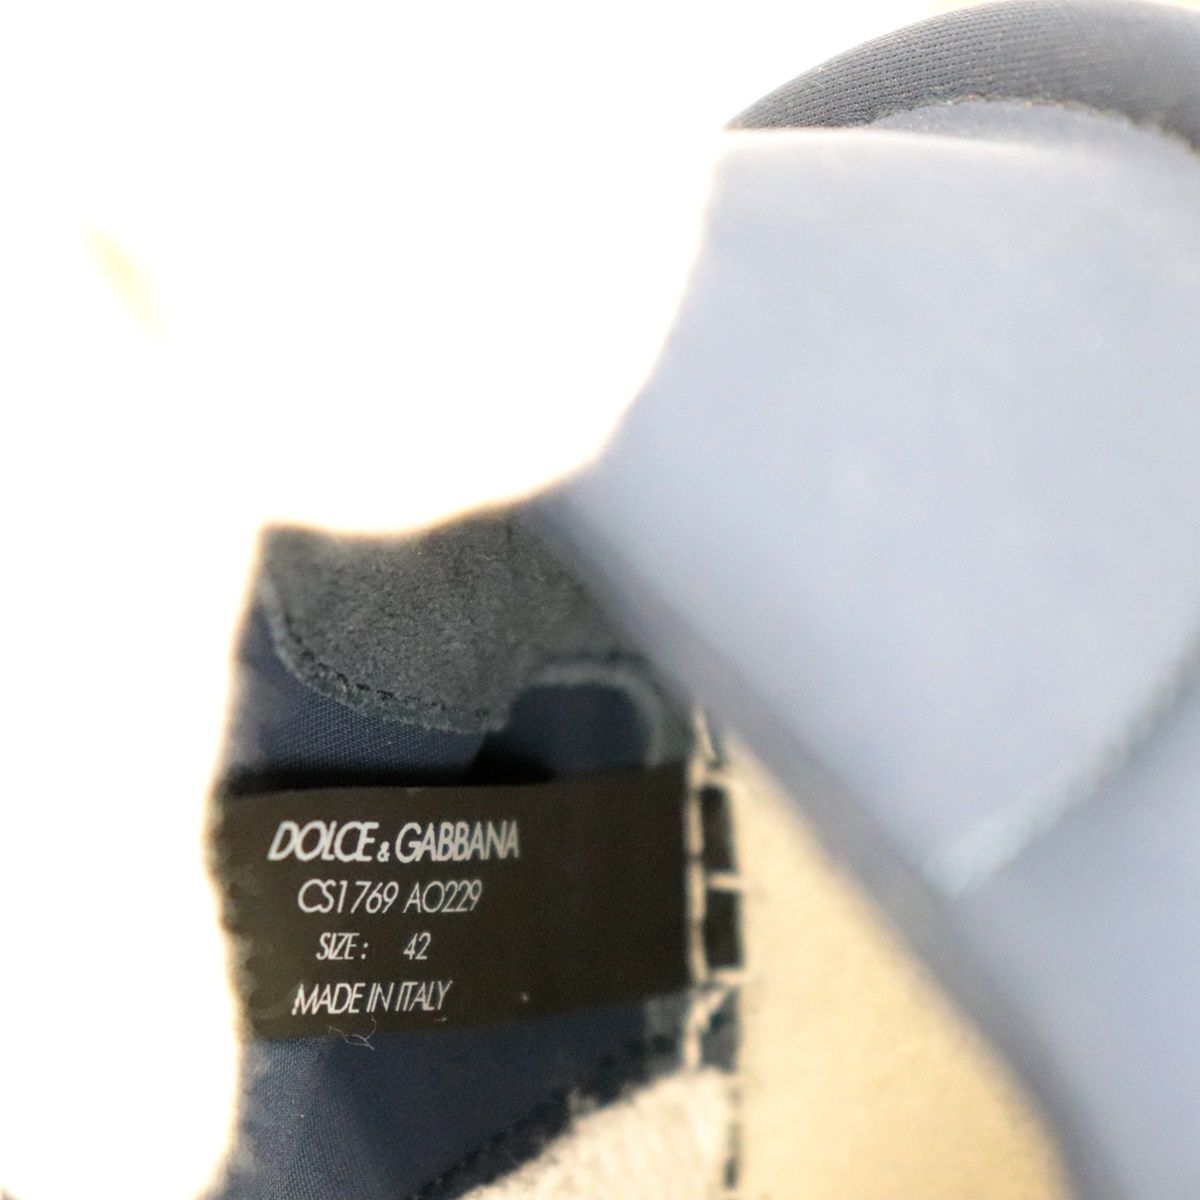 美品 ドルチェ&ガッバーナ MIXED-MATERIAL NS1 SLIP ON スニーカー メンズ 白 ネイビー ゴールド 42  DOLCE&GABBANA